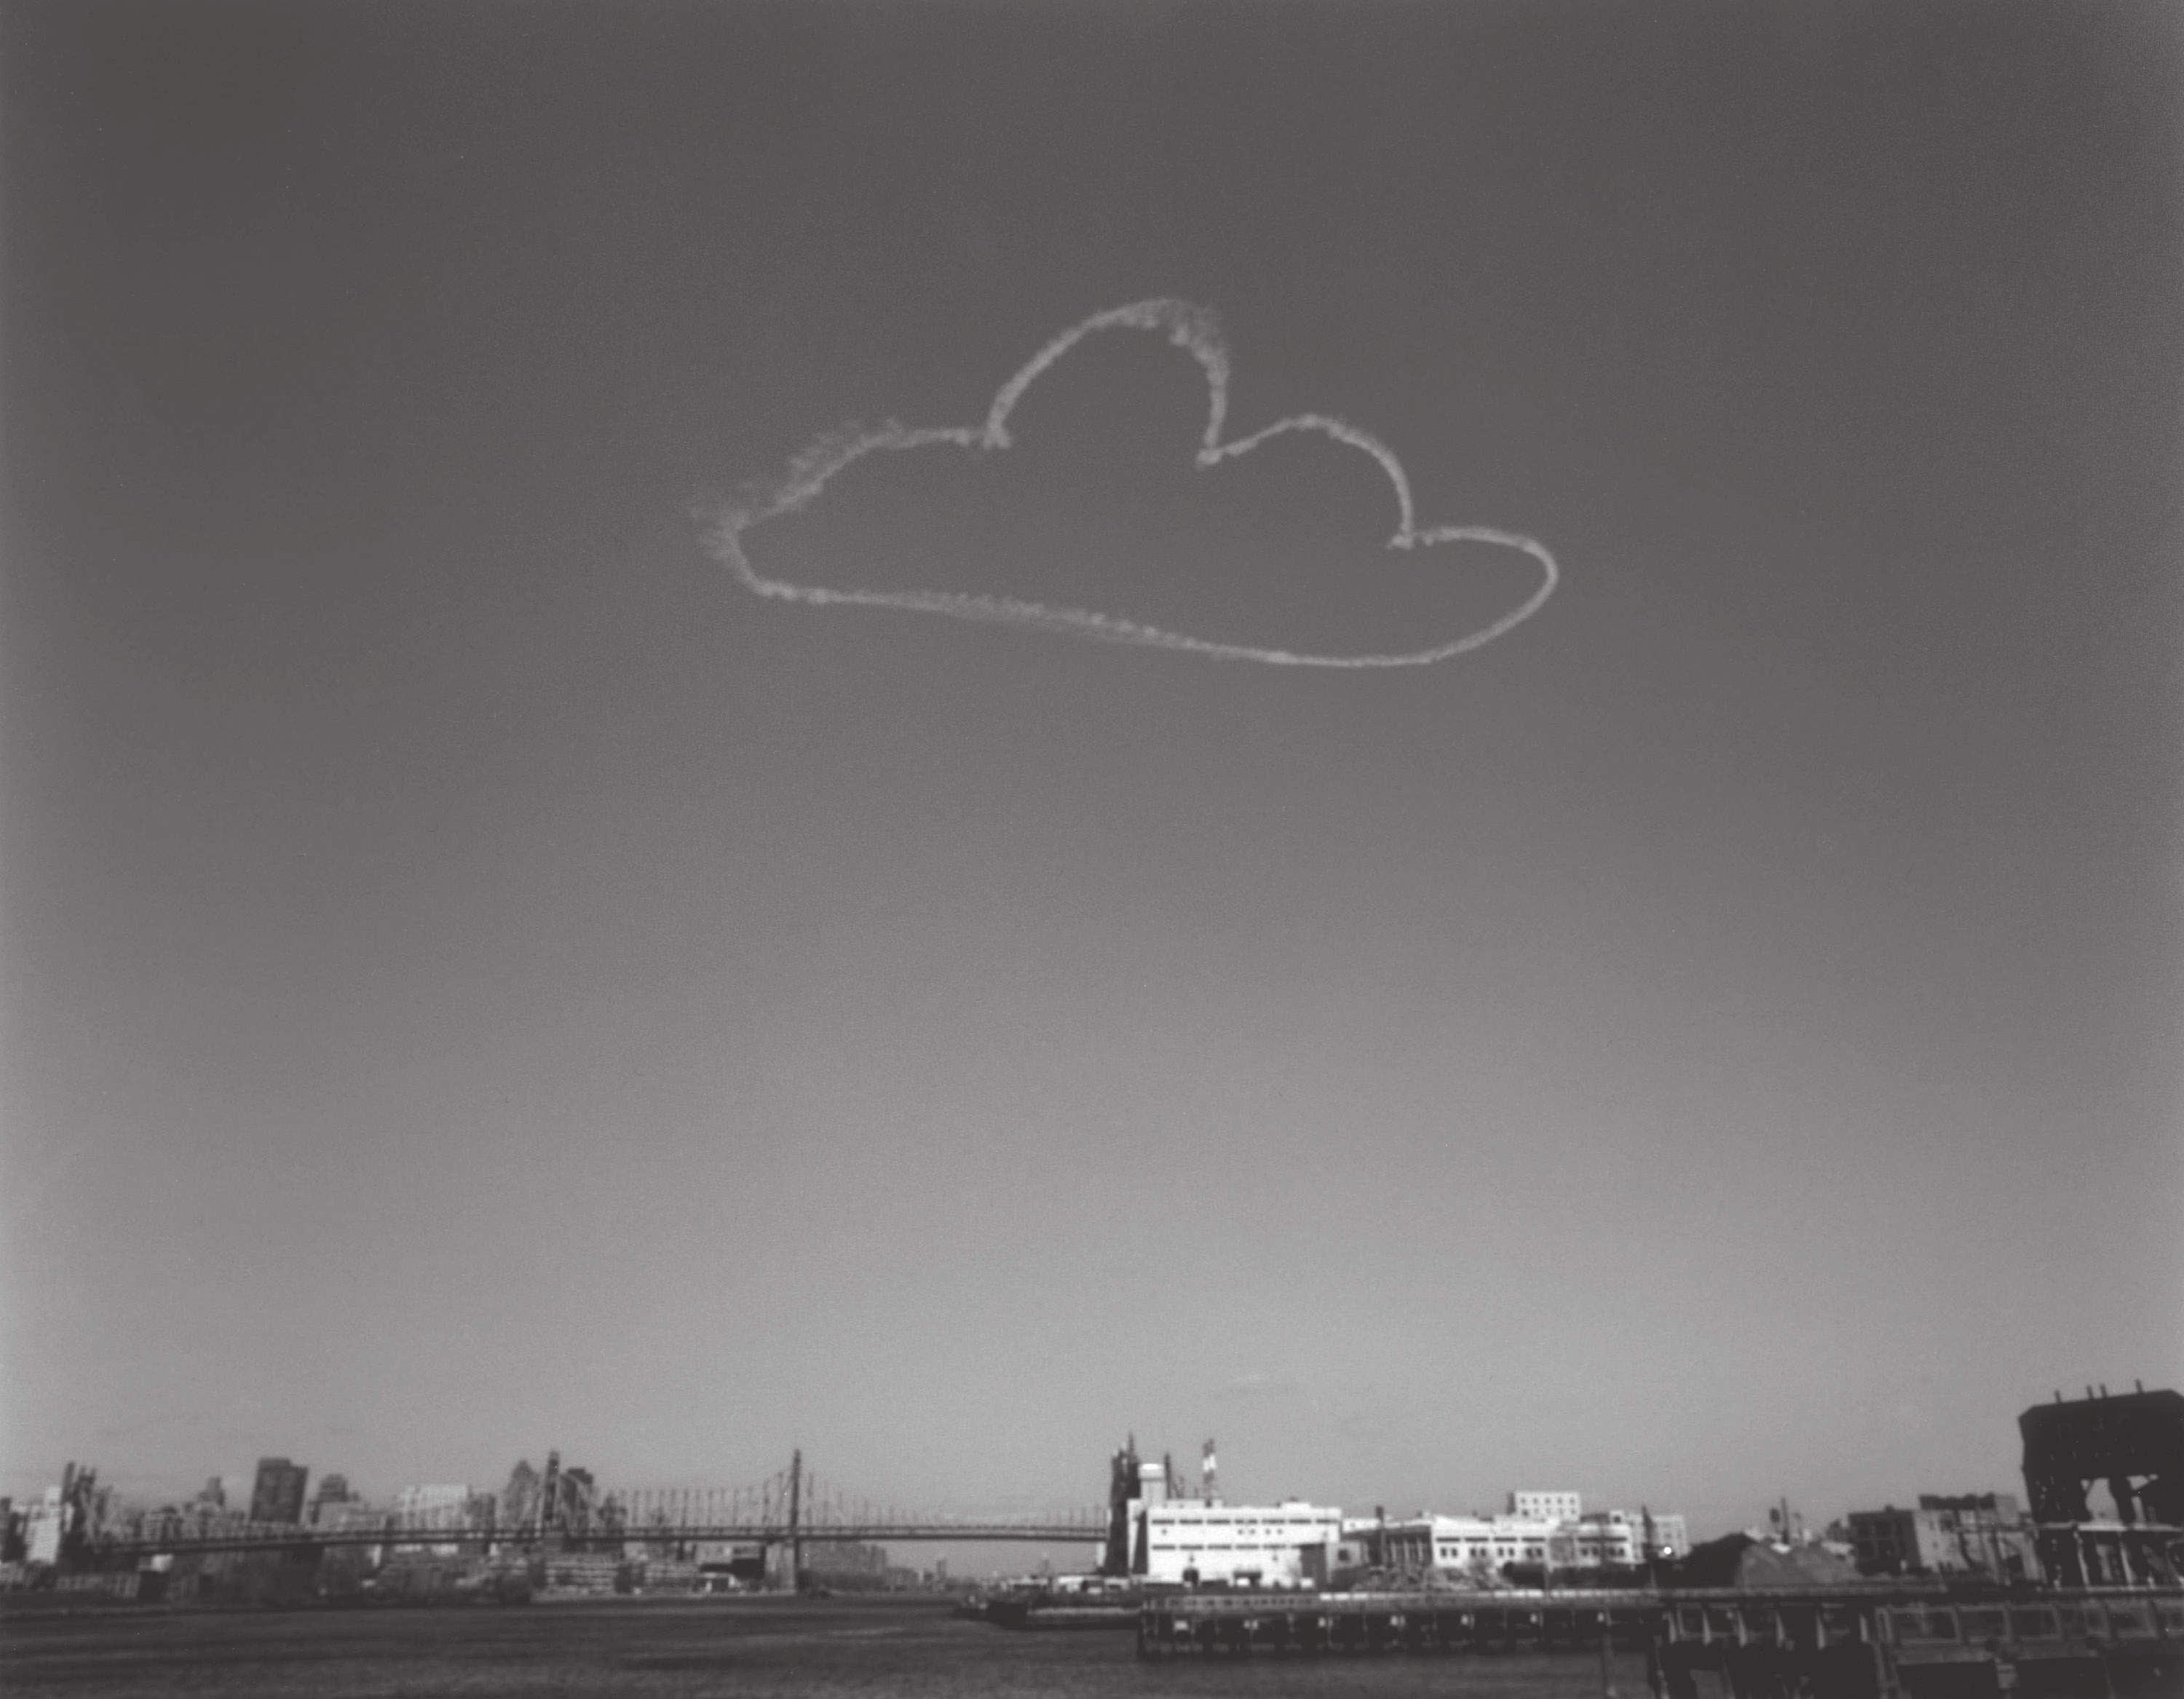 vik muniz pictures of clouds: 59th bridge, 2002